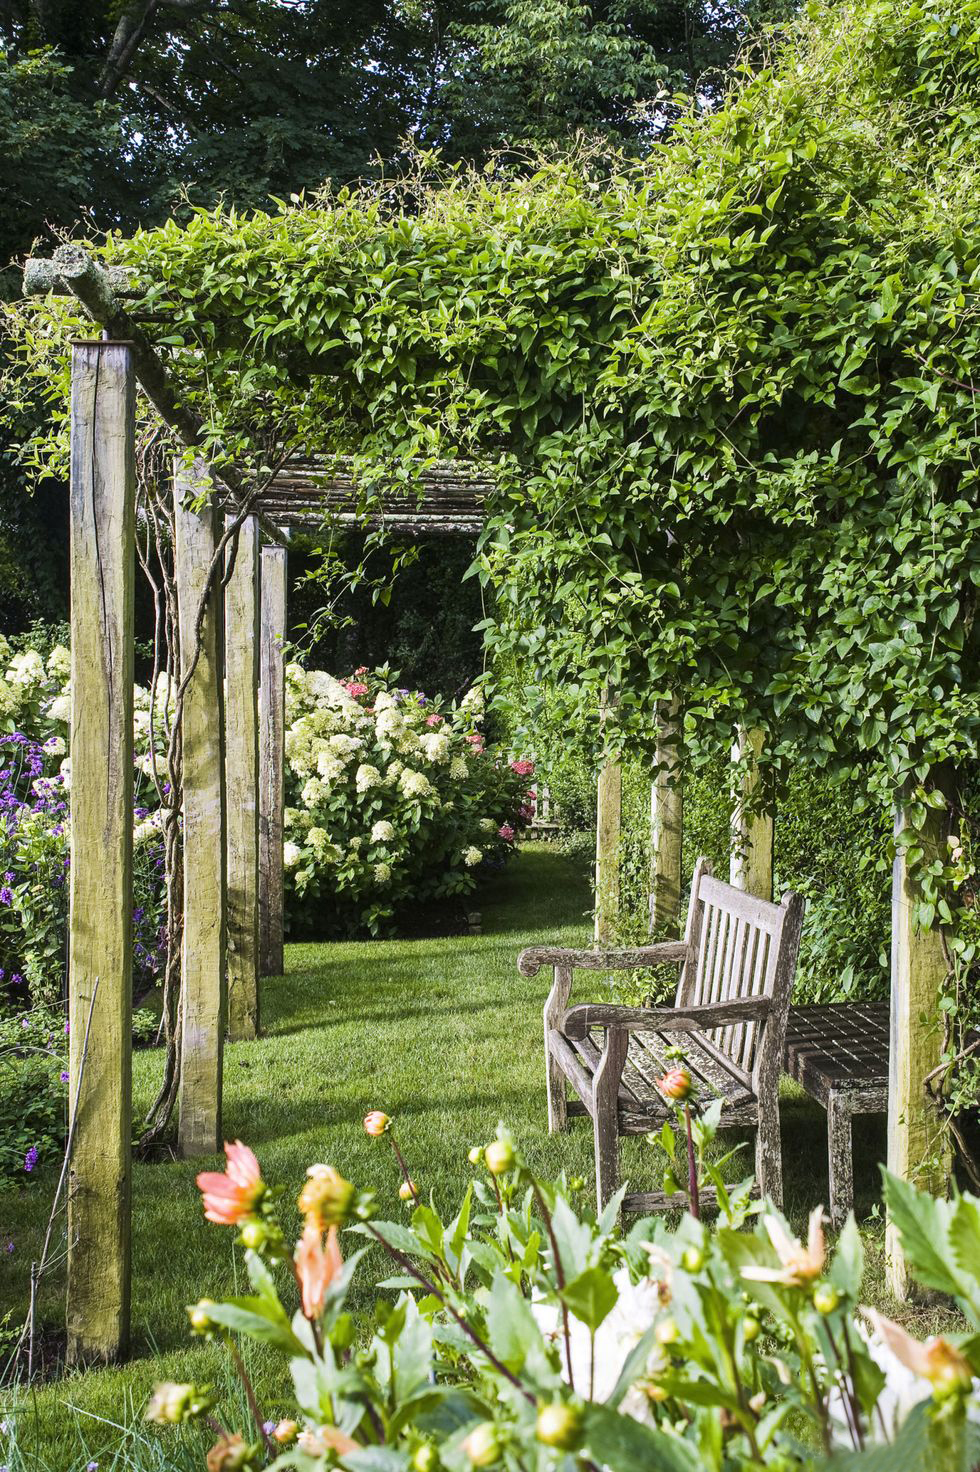 Cuối cùng, nếu ngôi nhà bạn có một khu vườn thì nhất định không để lãng phí không gian này nhé! Hình ảnh khu vườn của nhà văn Ina Garten tại ngôi làng East Hampton (Hoa Kỳ) với thiết kế mộc mạc nhưng ngập tràn cảm hứng lãng mạn cho người nghệ sĩ.